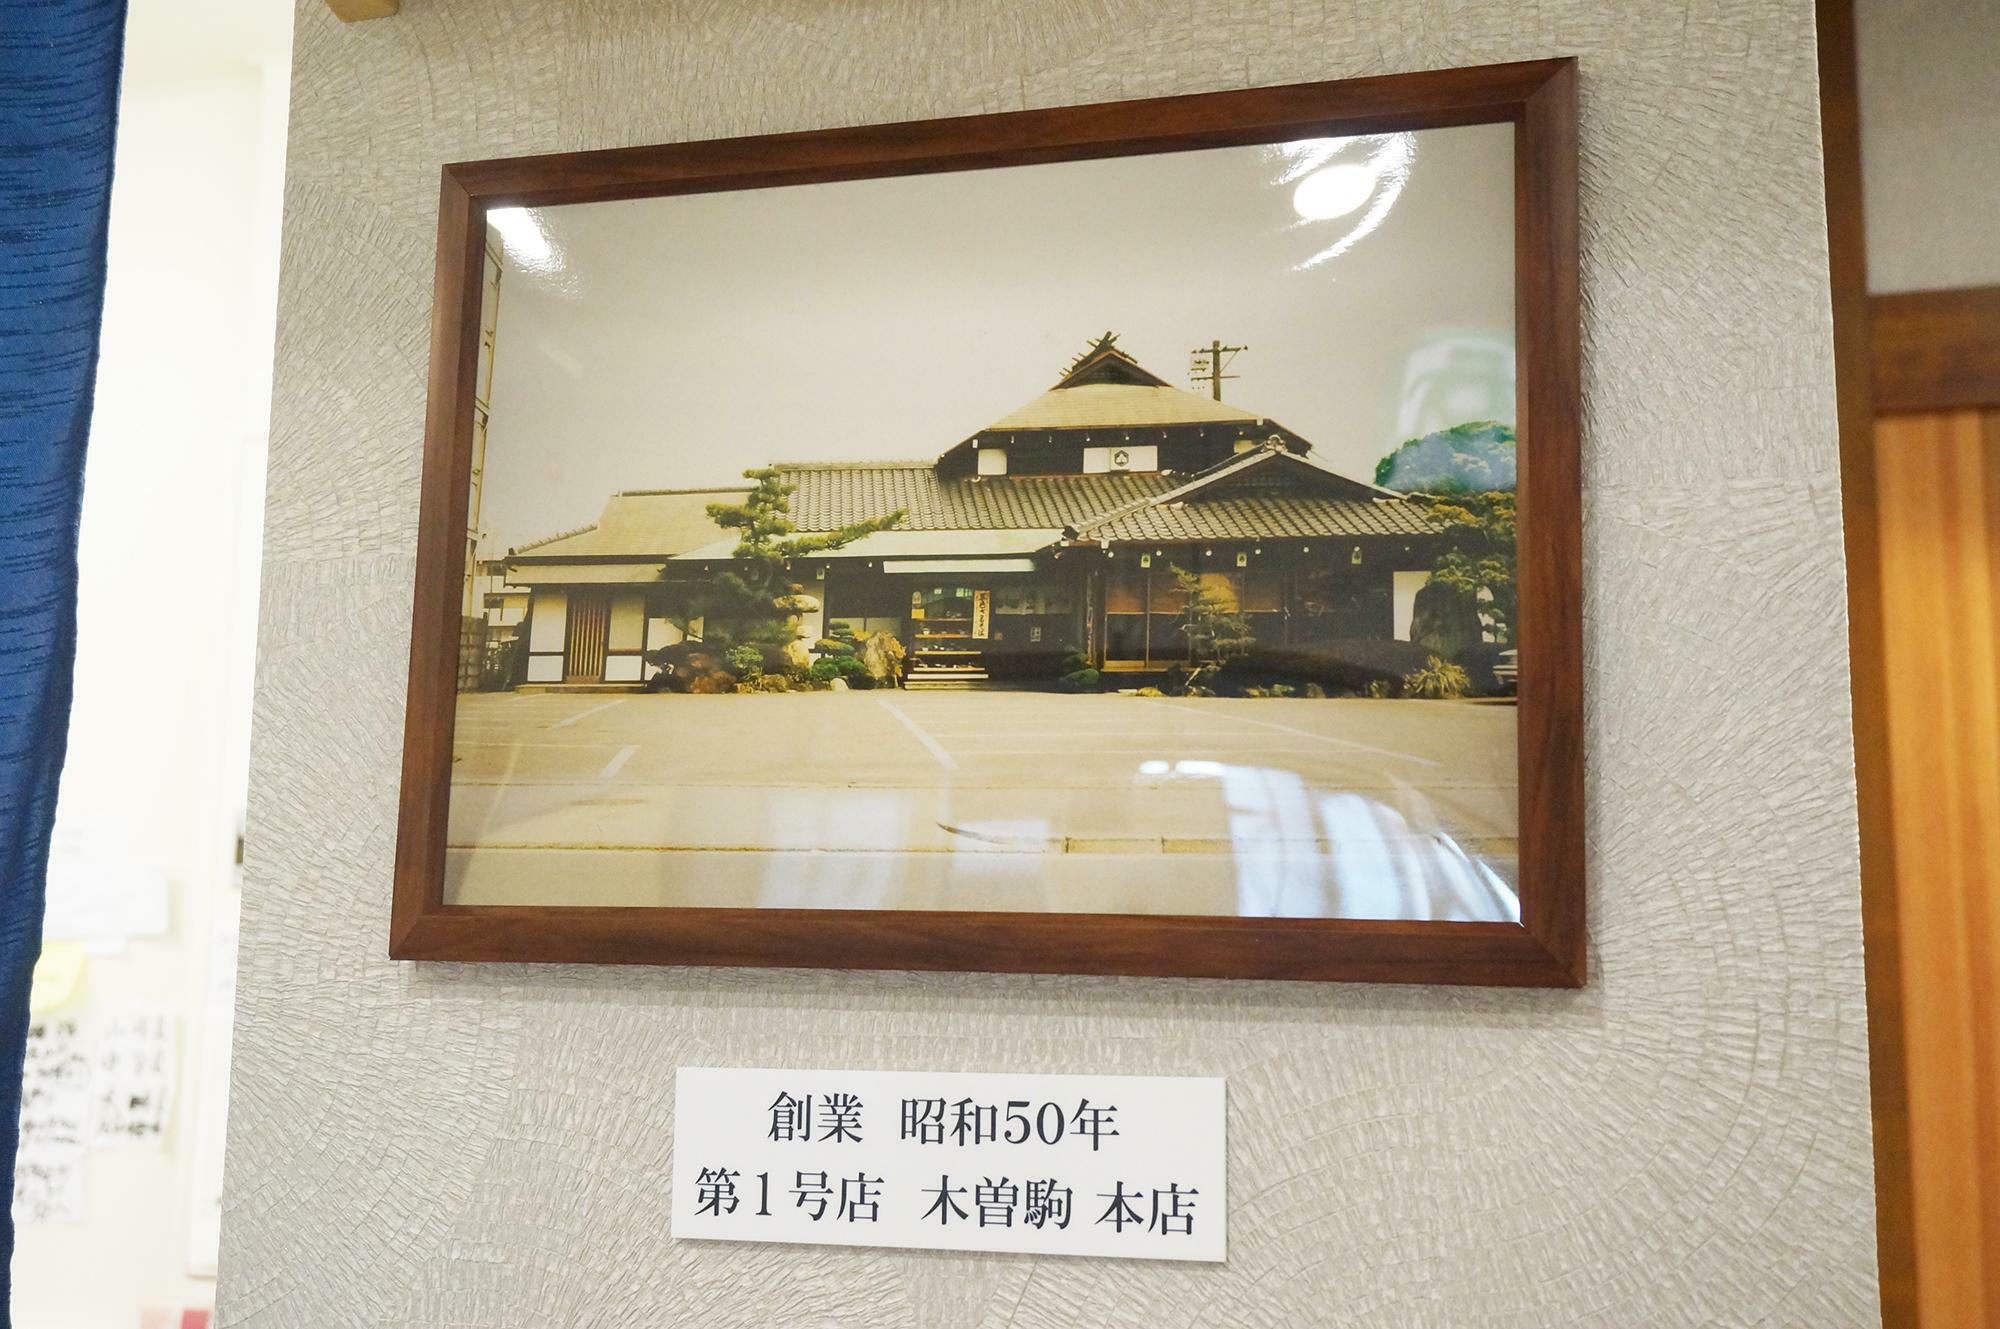 守山区にある昭和50年創業の木曽駒本店